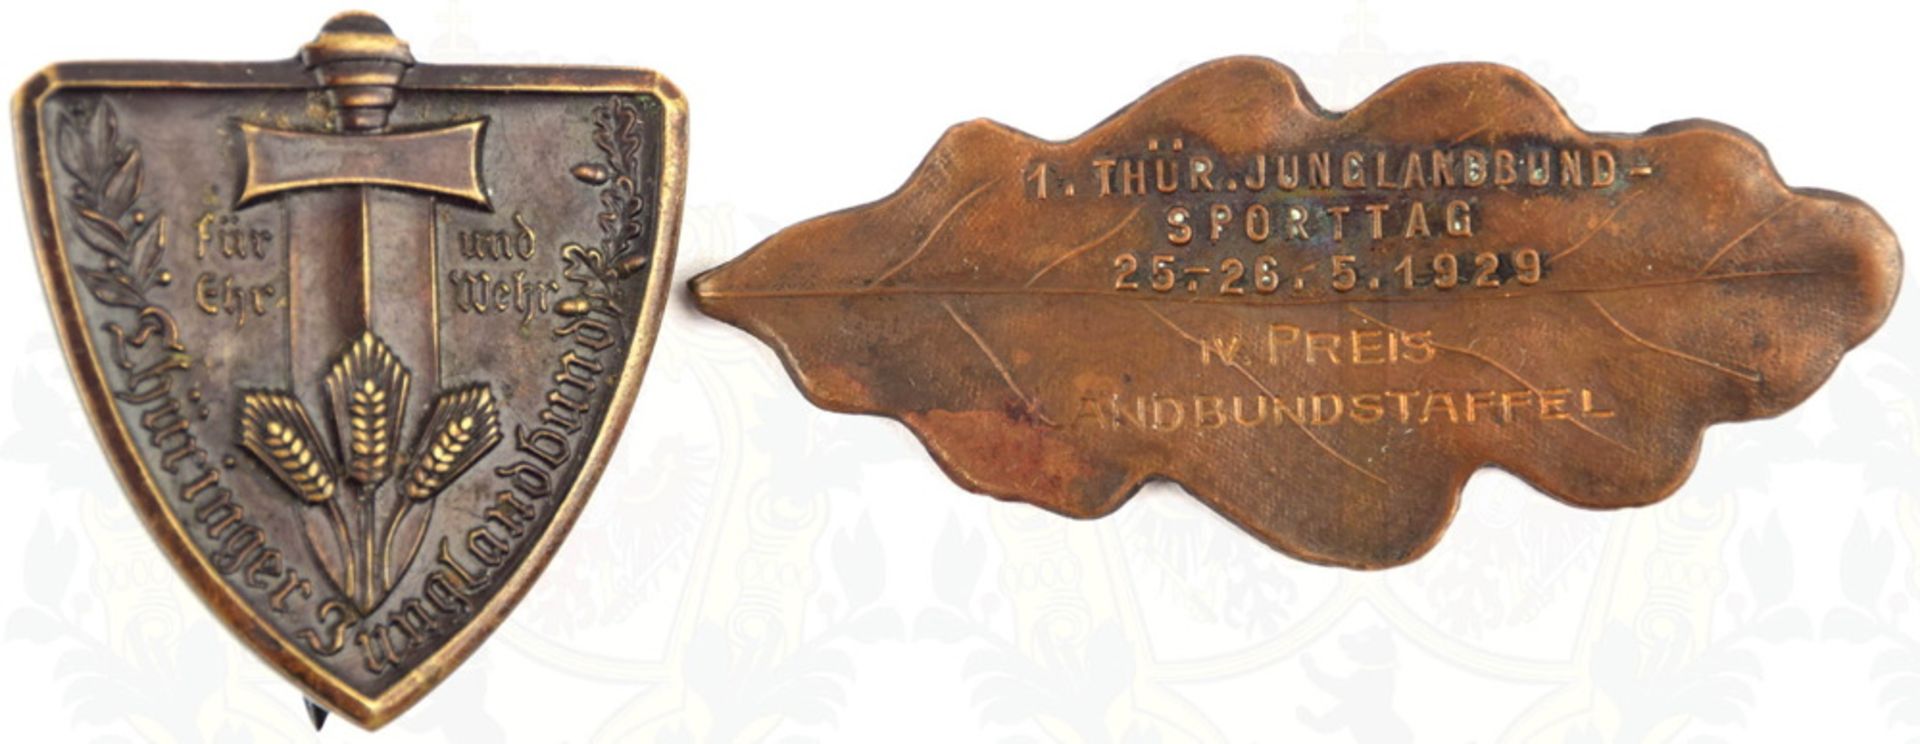 2 ABZEICHEN THÜRINGER JUNGLANDBUND Mitgliedsabzeichen, um 1930, Bronze, dunkel patiniert, flache